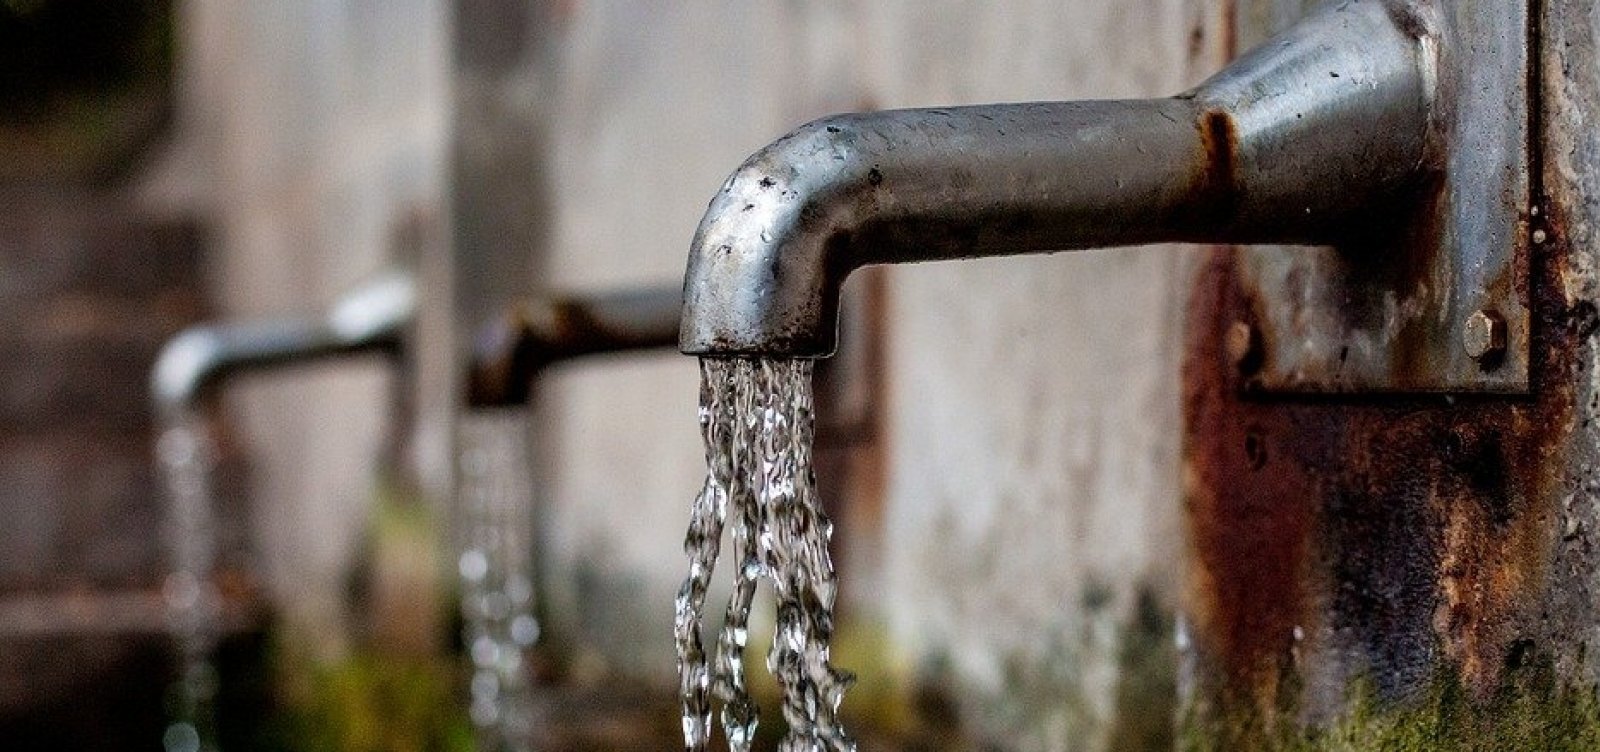 Abastecimento de água será interrompido em 43 bairros de Salvador para avanço nas obras do metrô